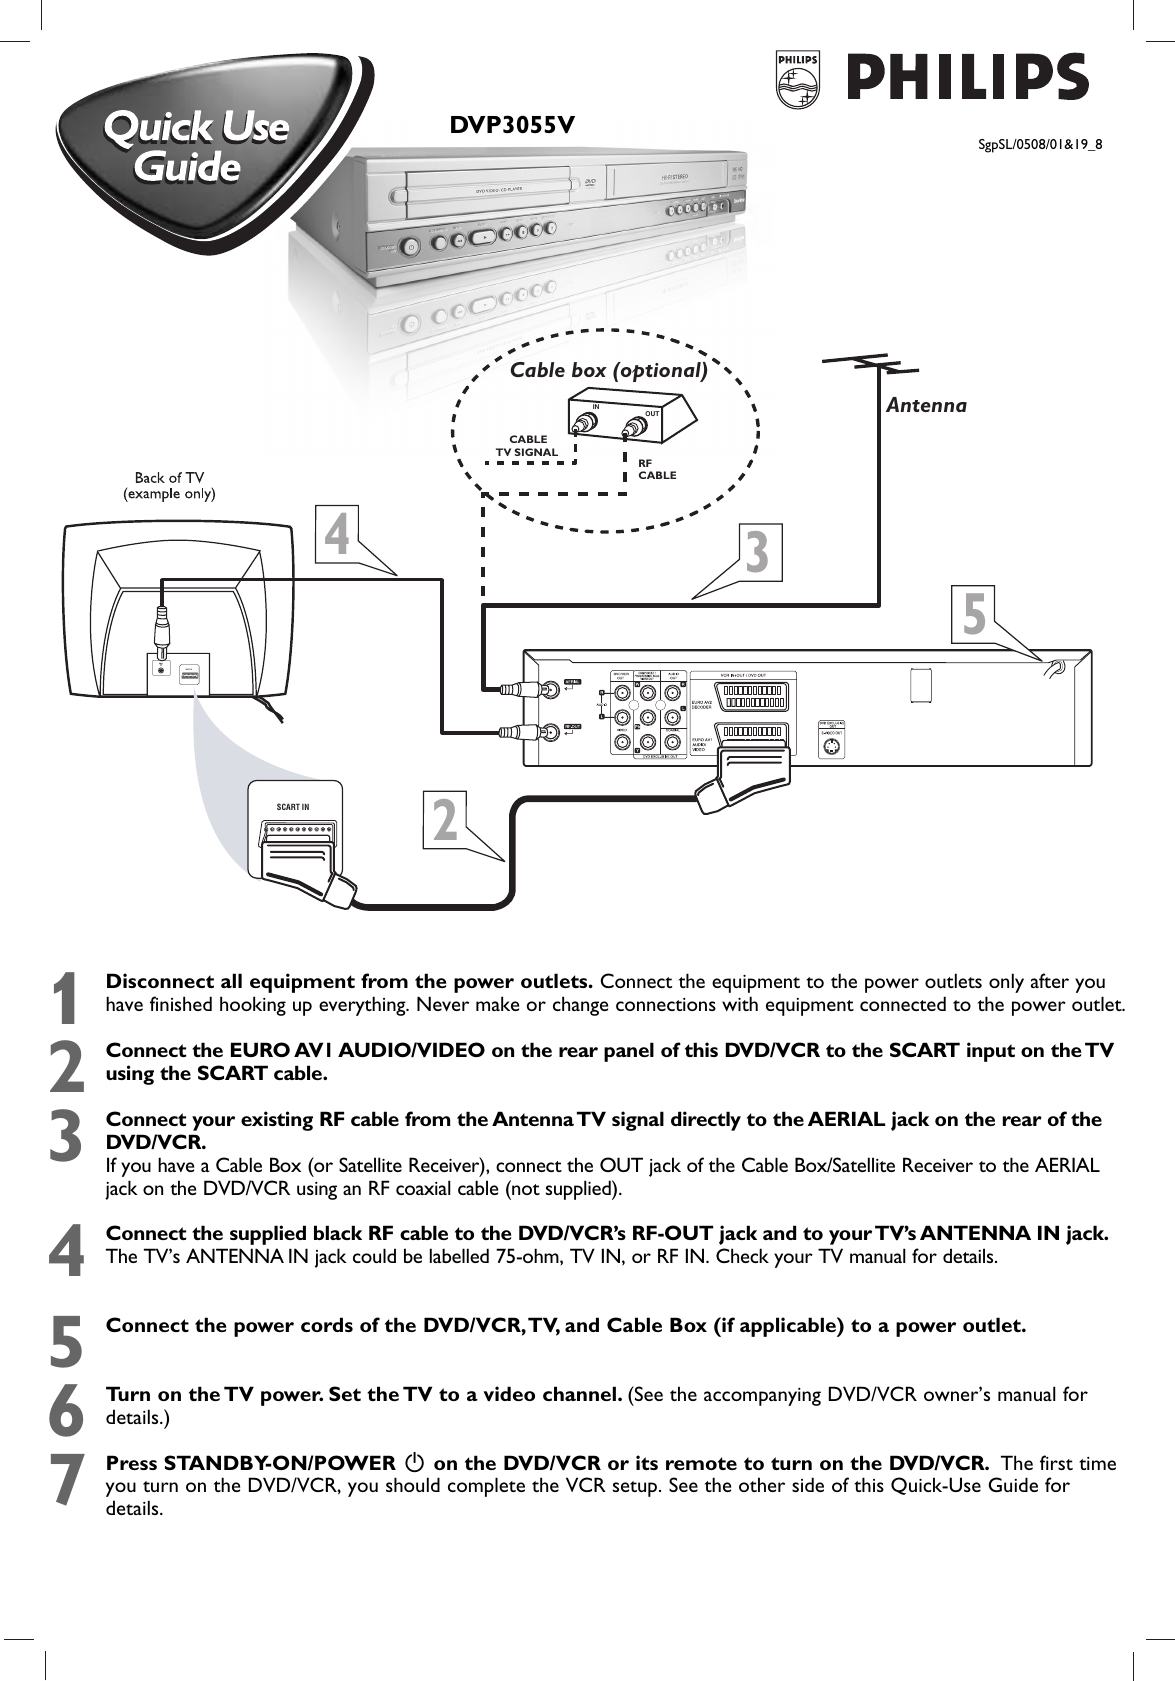 Page 1 of 9 - Philips DVP3055V/01 3055V Qug_00&19 User Manual Quick Start Guide Dvp3055v 01 Qsg Eng